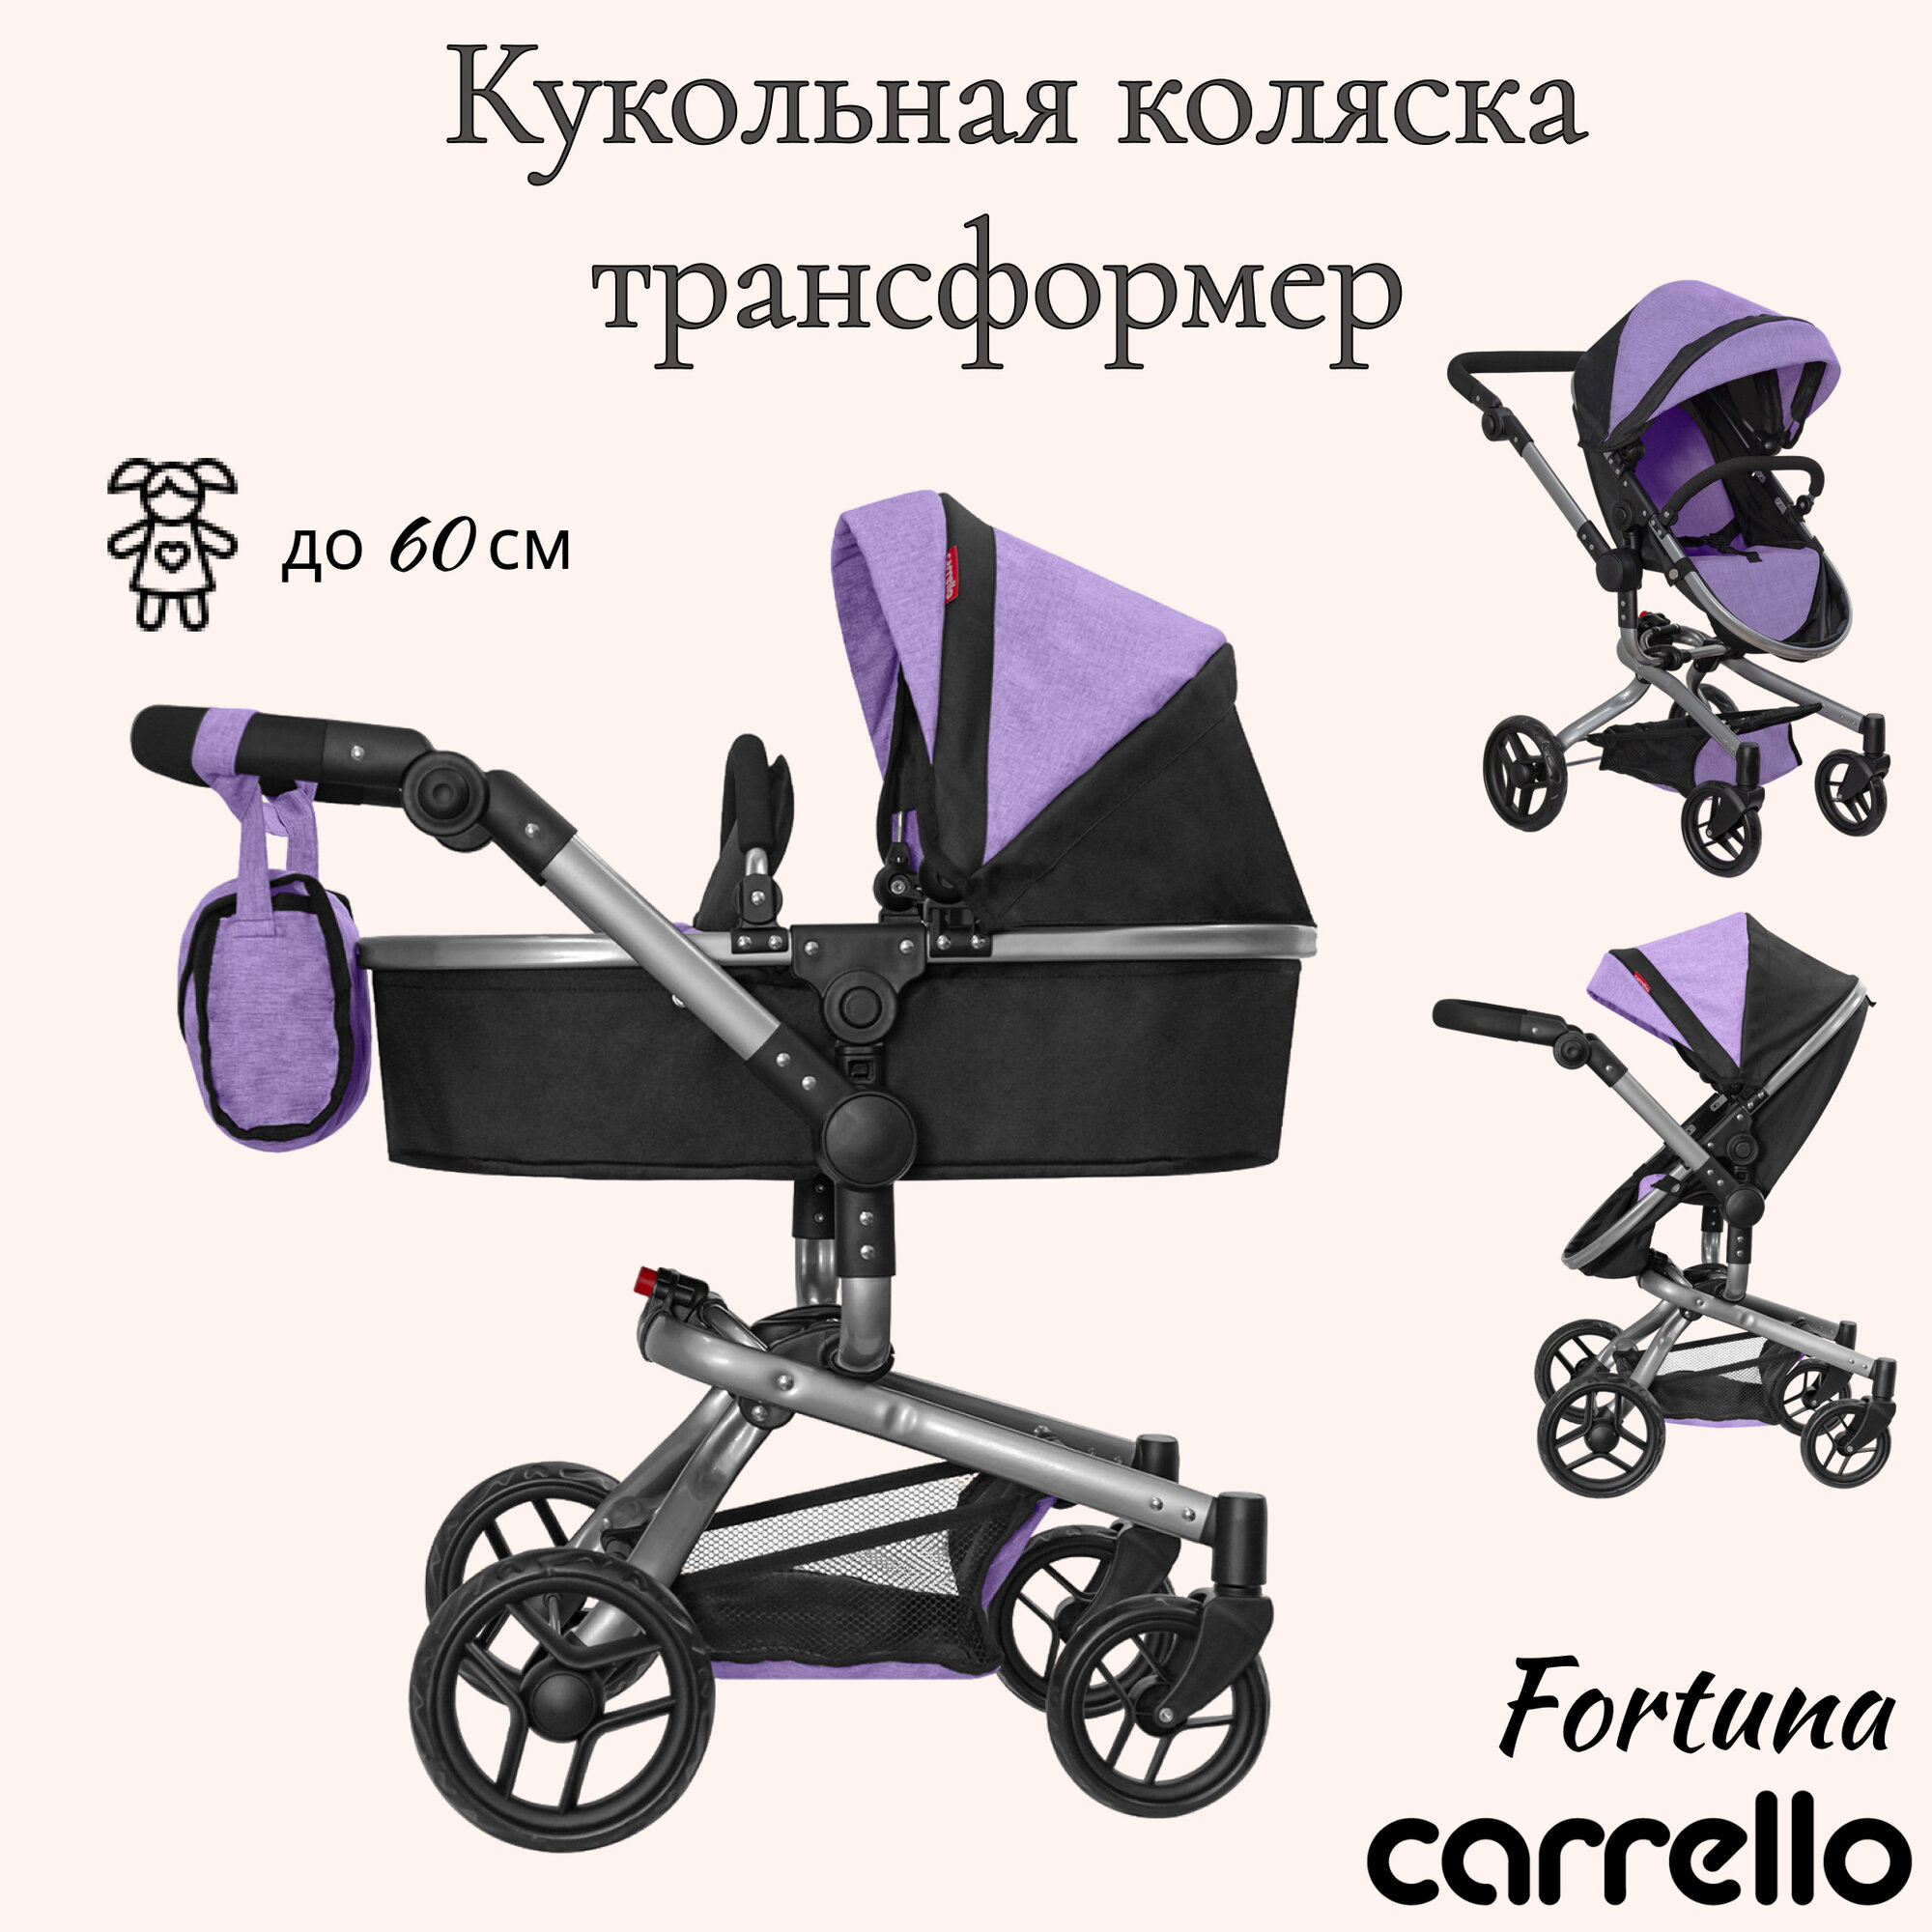 Коляски для кукол Carrello Fortuna, фиолетовая